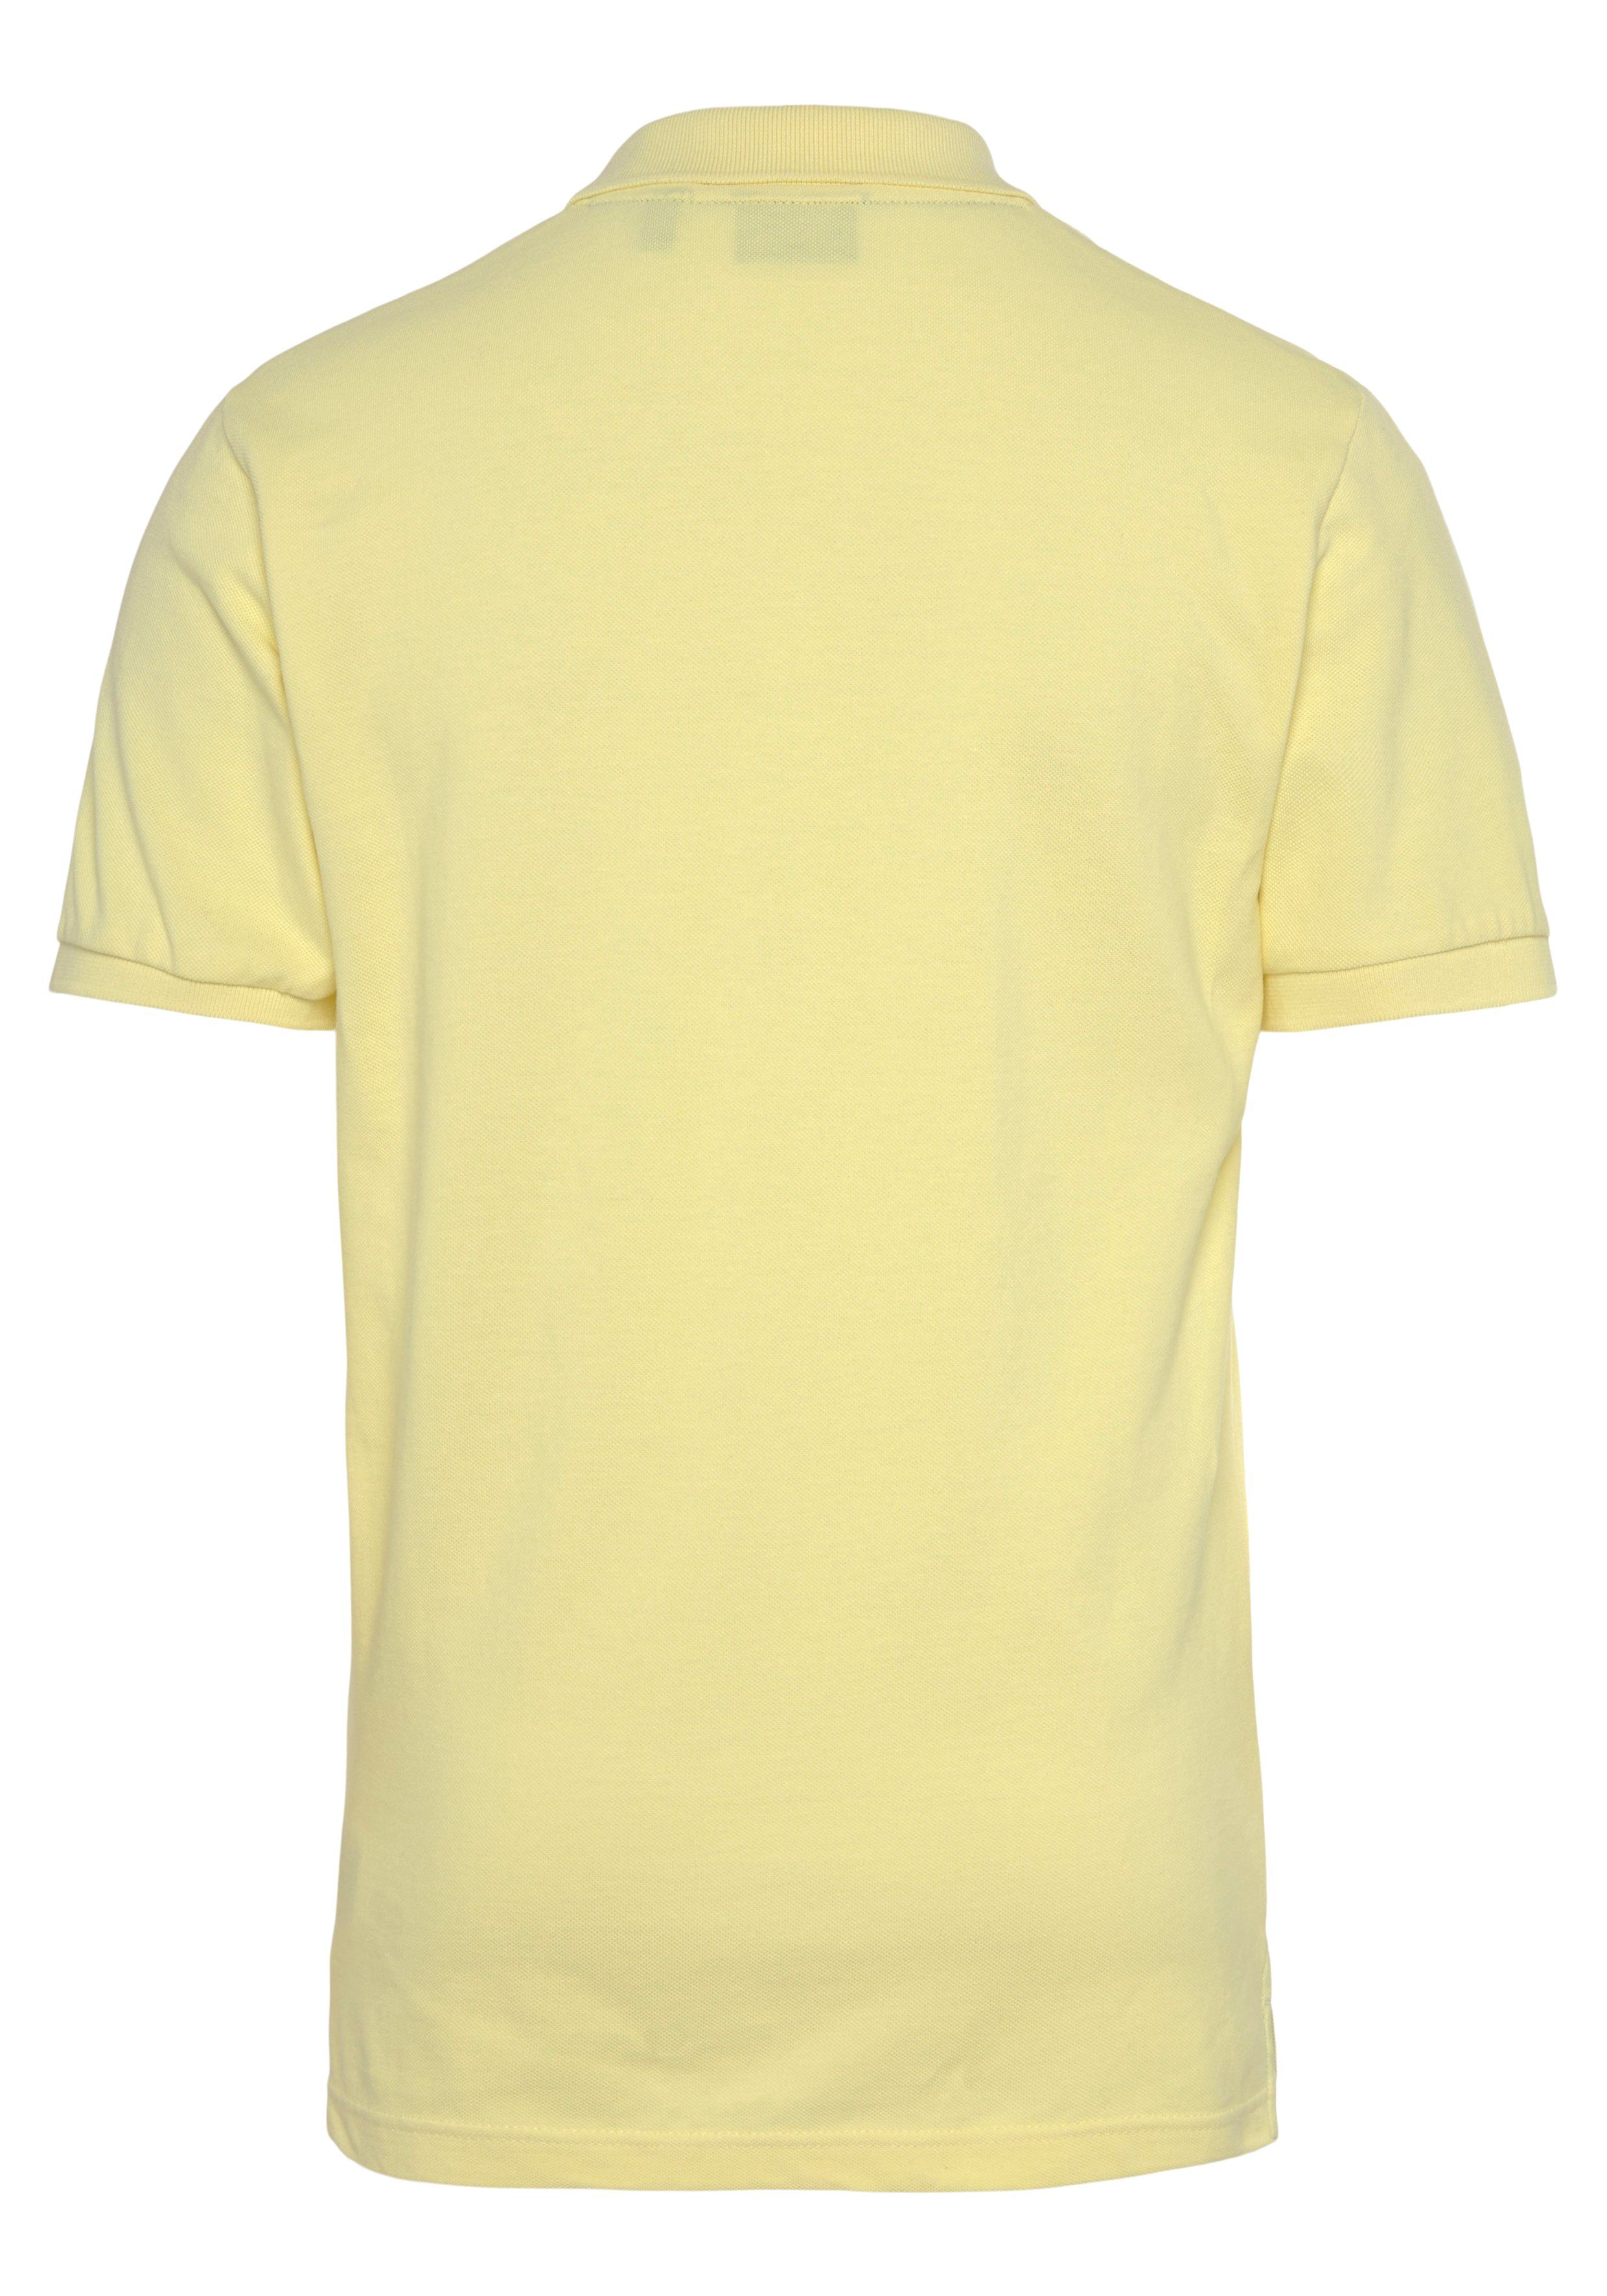 Fit, RUGGER Casual, Gant Regular Smart MD. Piqué-Polo Premium PIQUE Shirt, lem.yellow Qualität KA Poloshirt